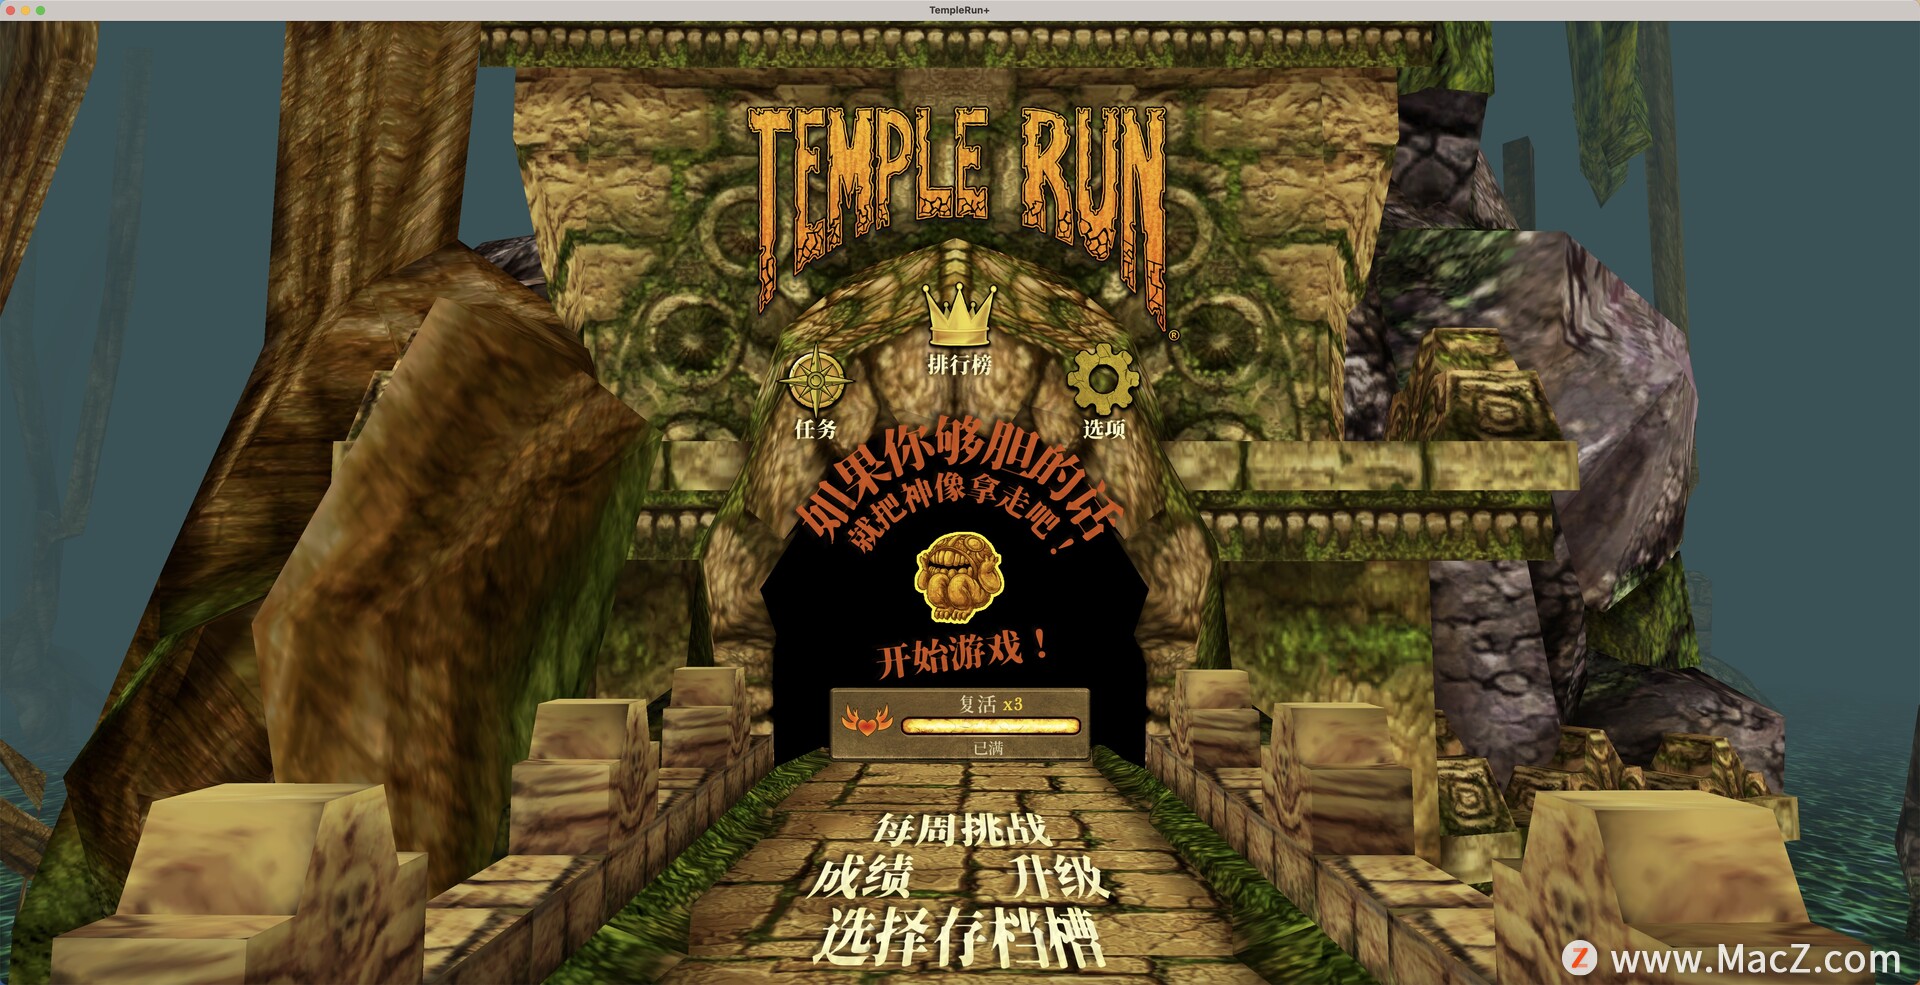 神庙逃亡Temple Run+ for mac(经典酷跑游戏) 84.55 MB 简体中文